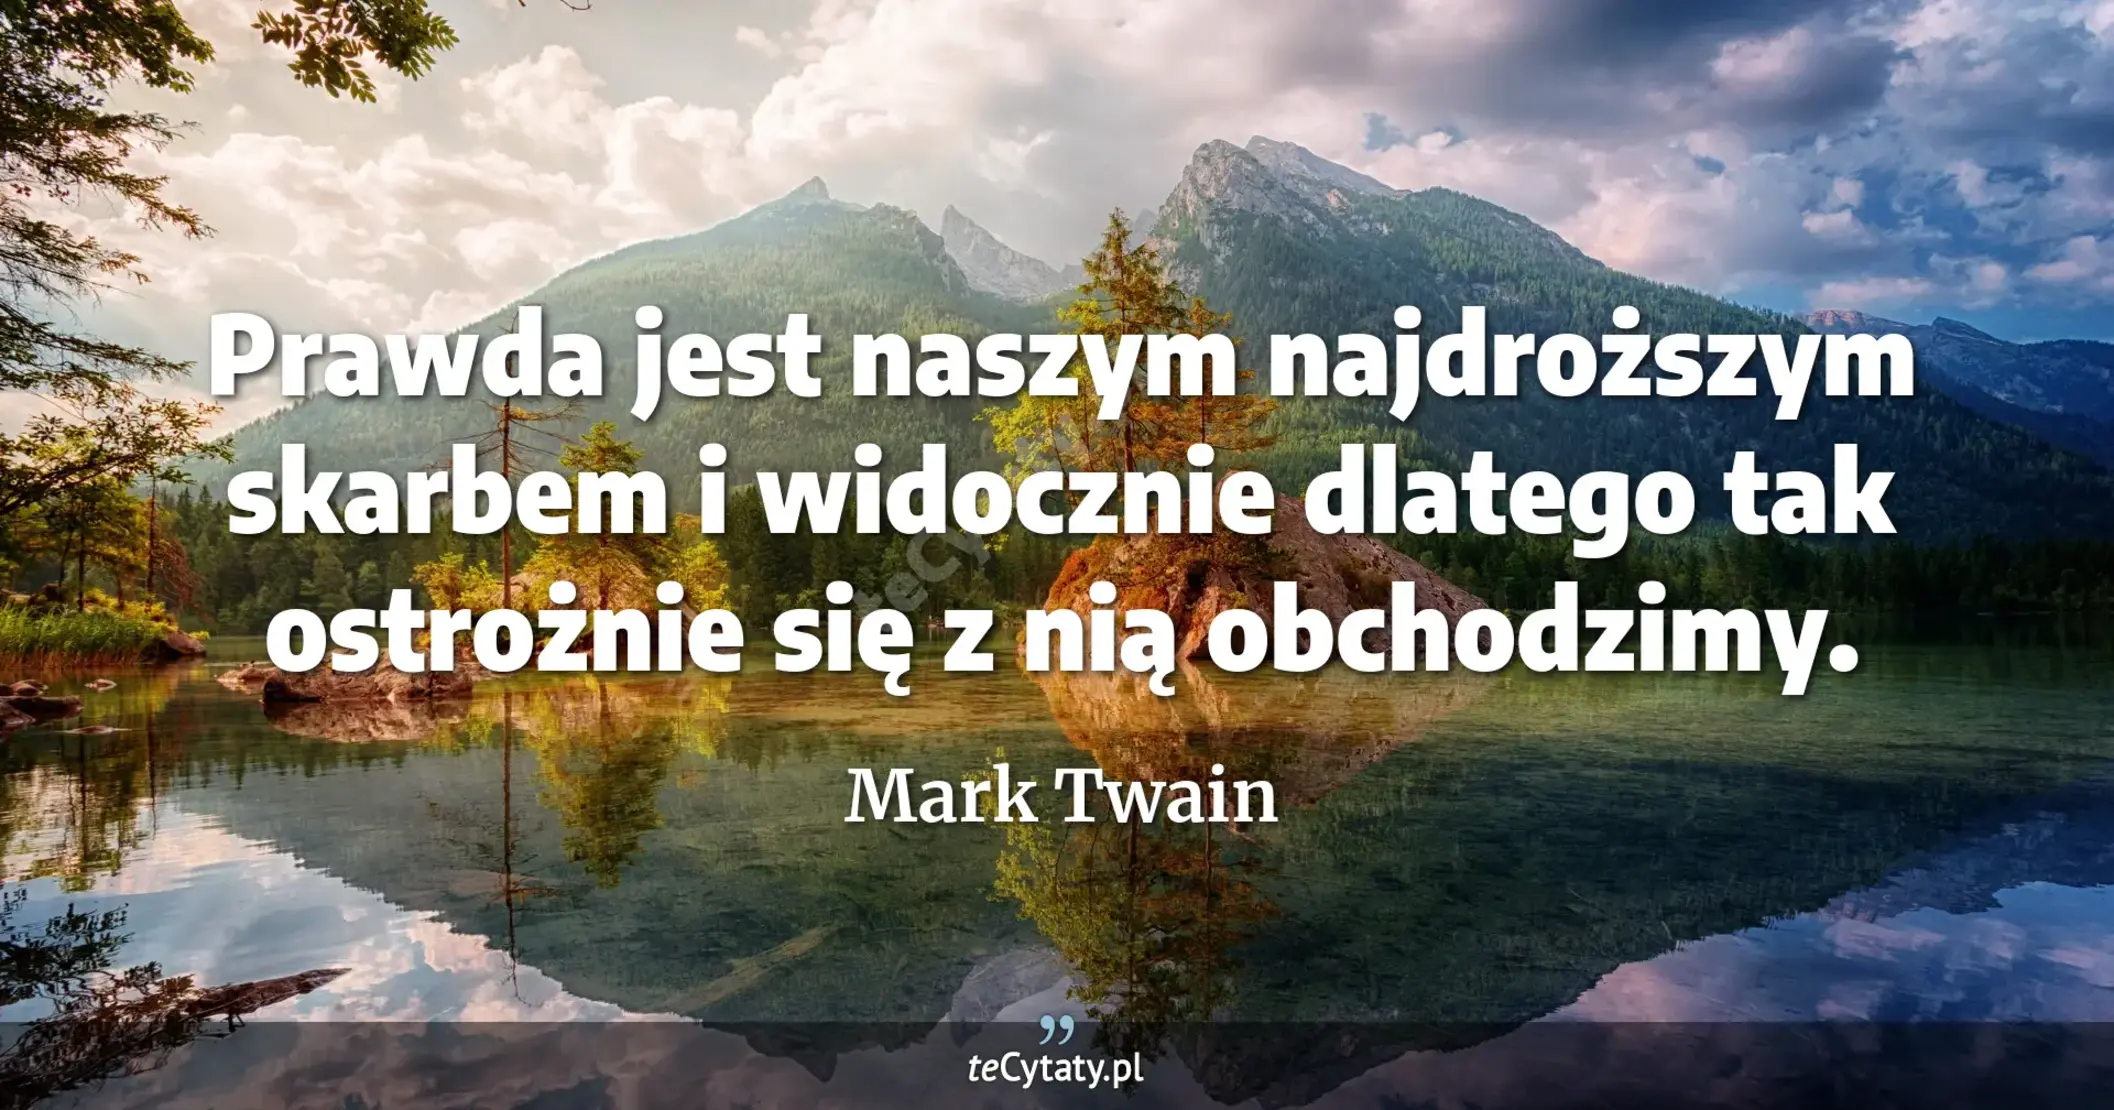 Prawda jest naszym najdroższym skarbem i widocznie dlatego tak ostrożnie się z nią obchodzimy. - Mark Twain